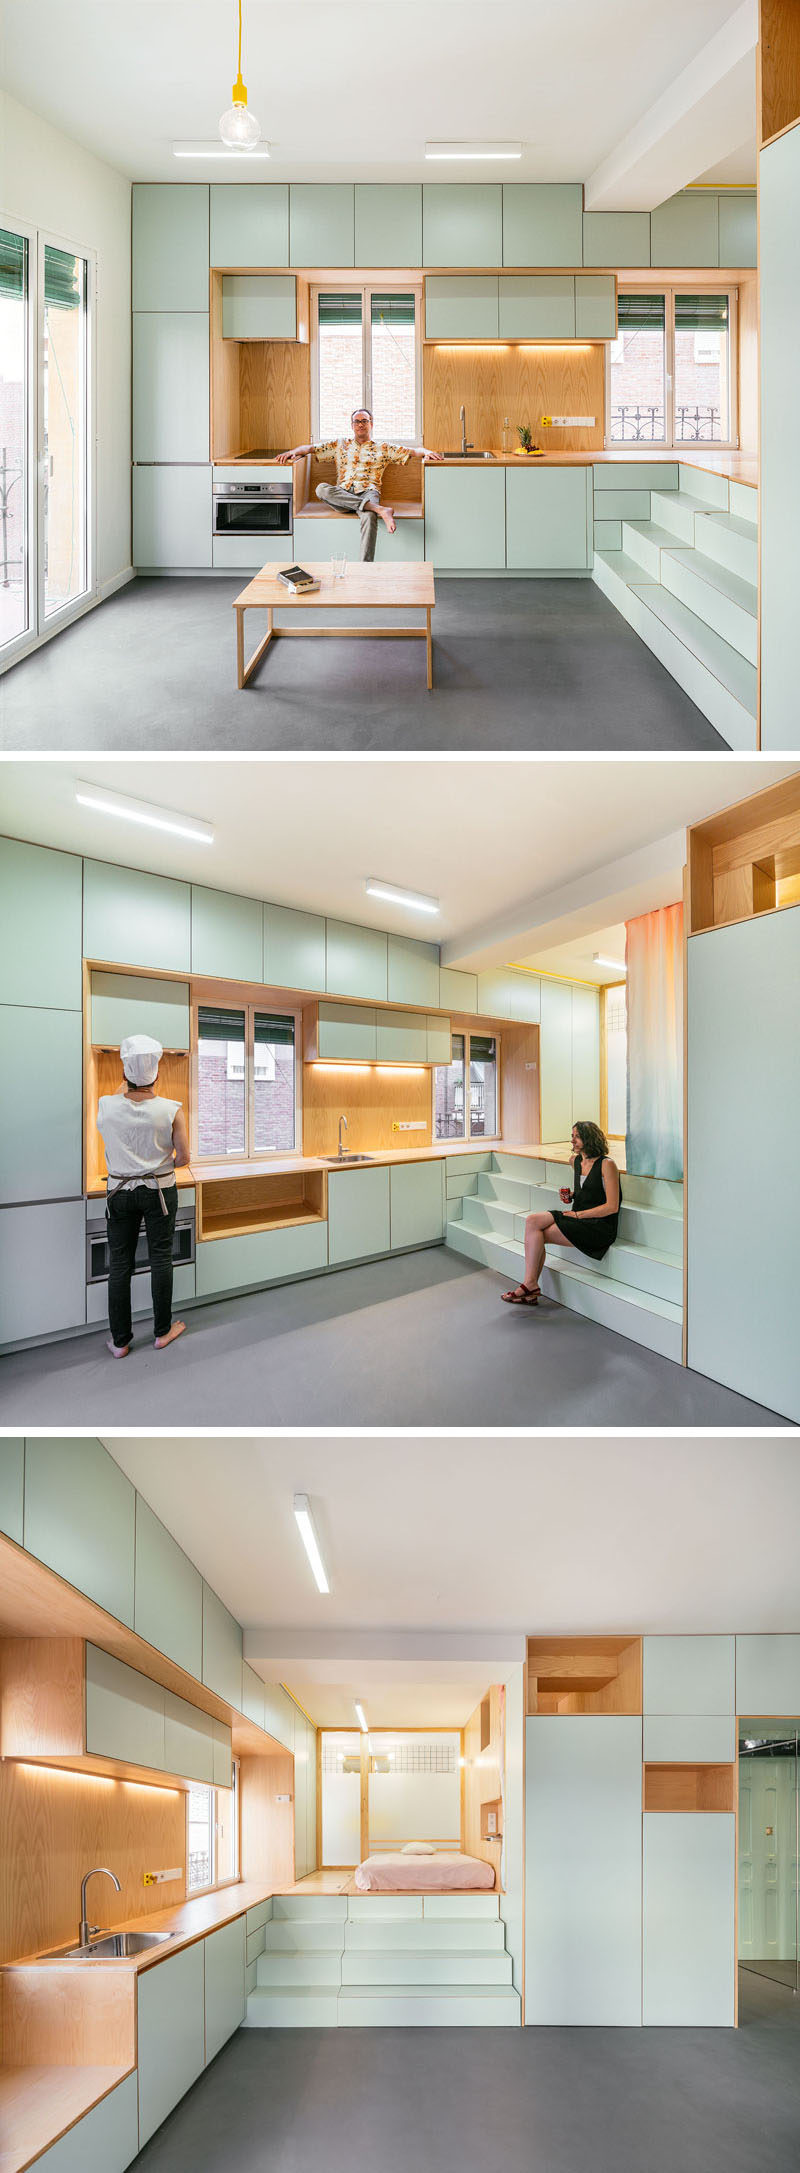 Căn hộ nhỏ và hiện đại này có khu vực mở, trong khi nhà bếp với tủ màu xanh nhạt và gỗ có đường nét trên tường.  #SmallApartment #Kitchen